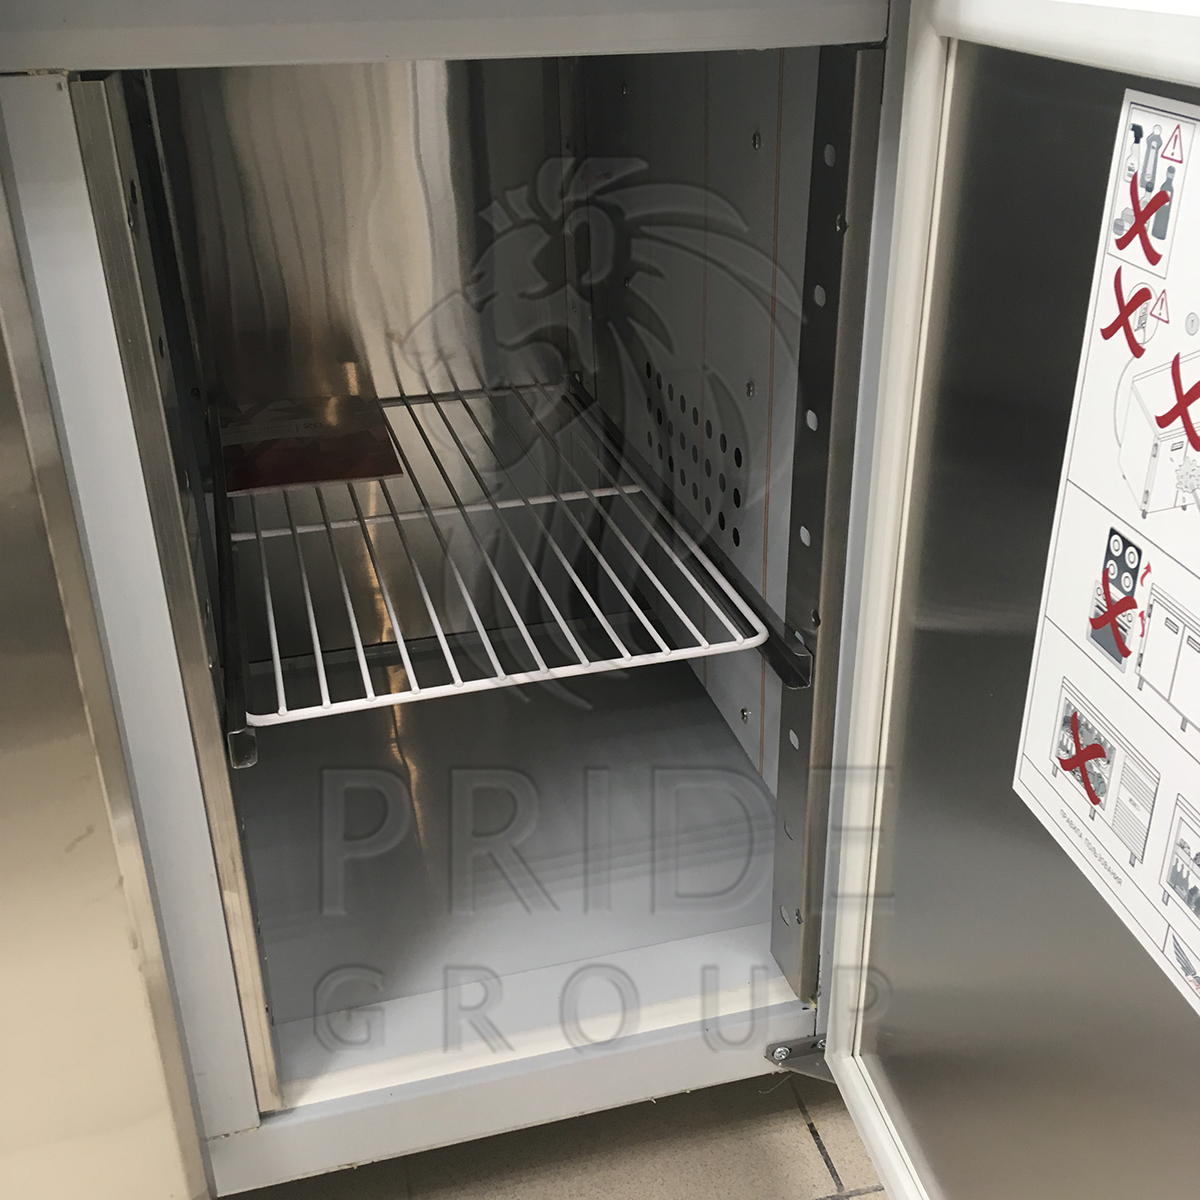 Стол холодильный Finist СХС-700-2 1400х700х850 мм